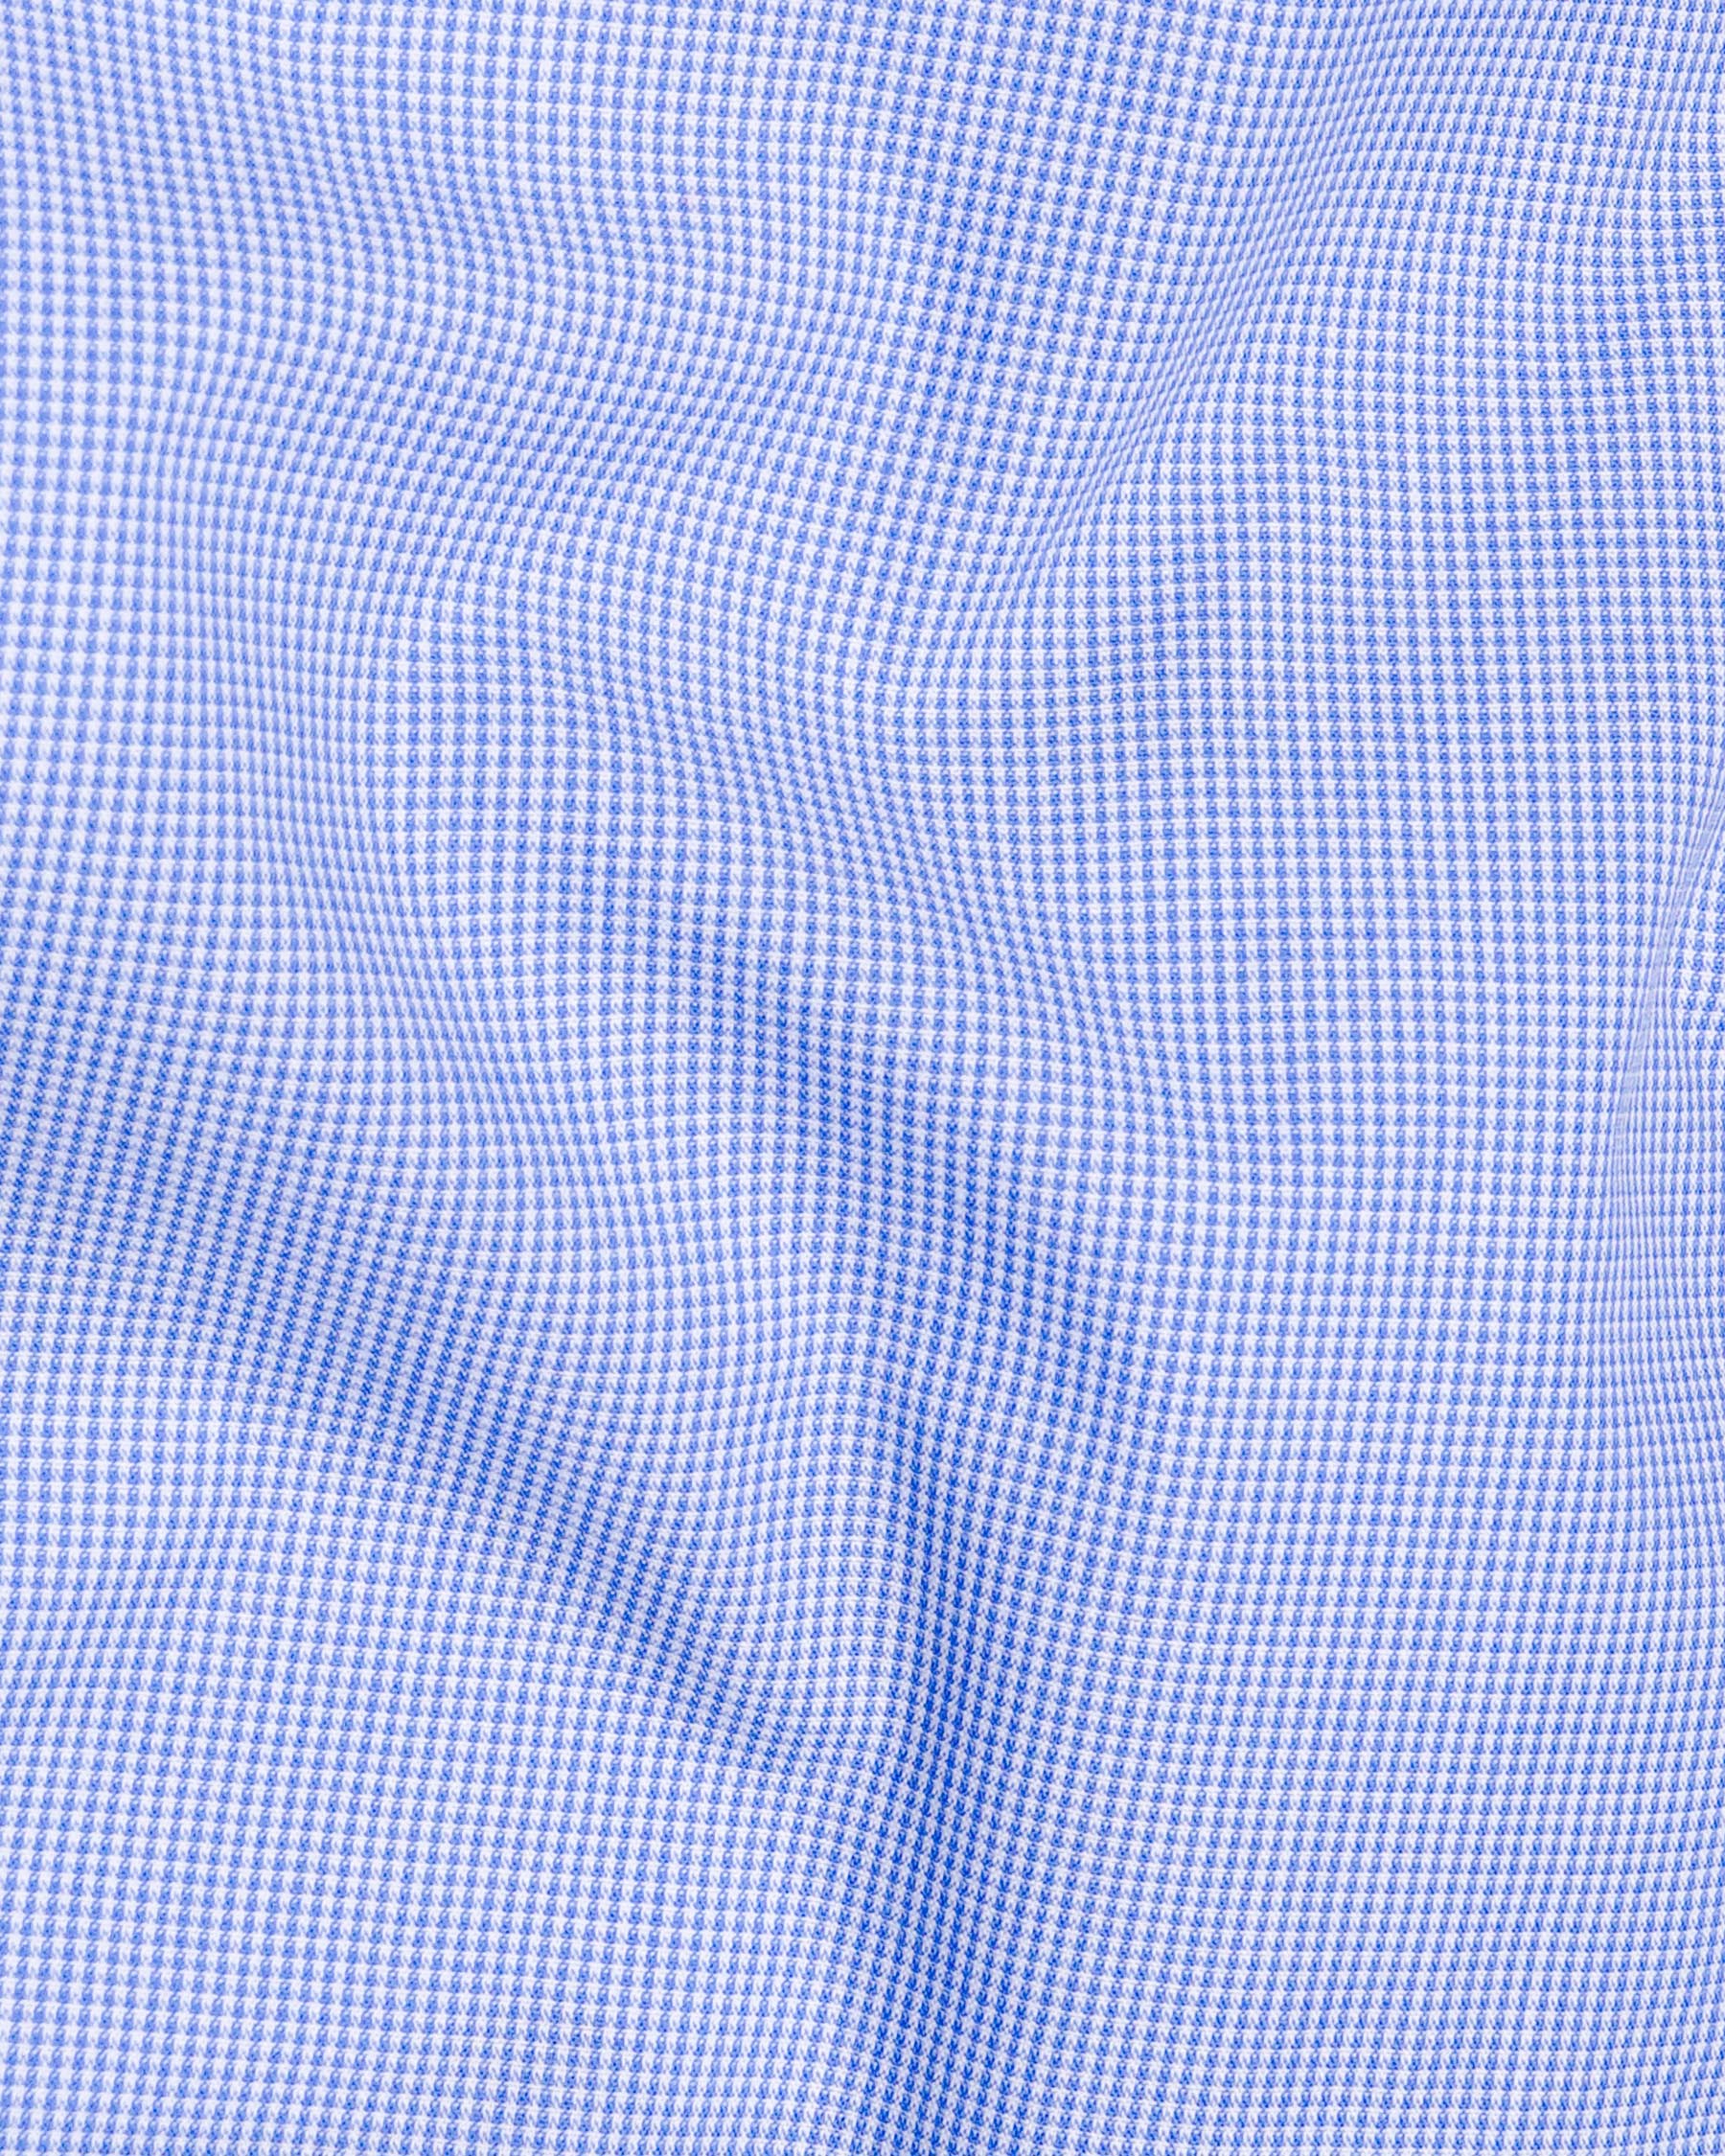 Havelock Blue and White Premium Cotton Shirt